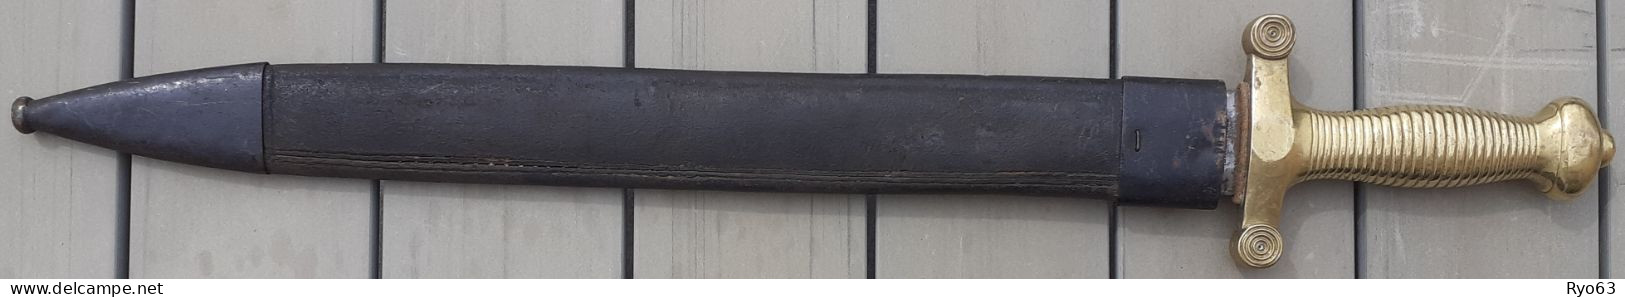 Glaive D’infanterie Modèle 1831 - Knives/Swords